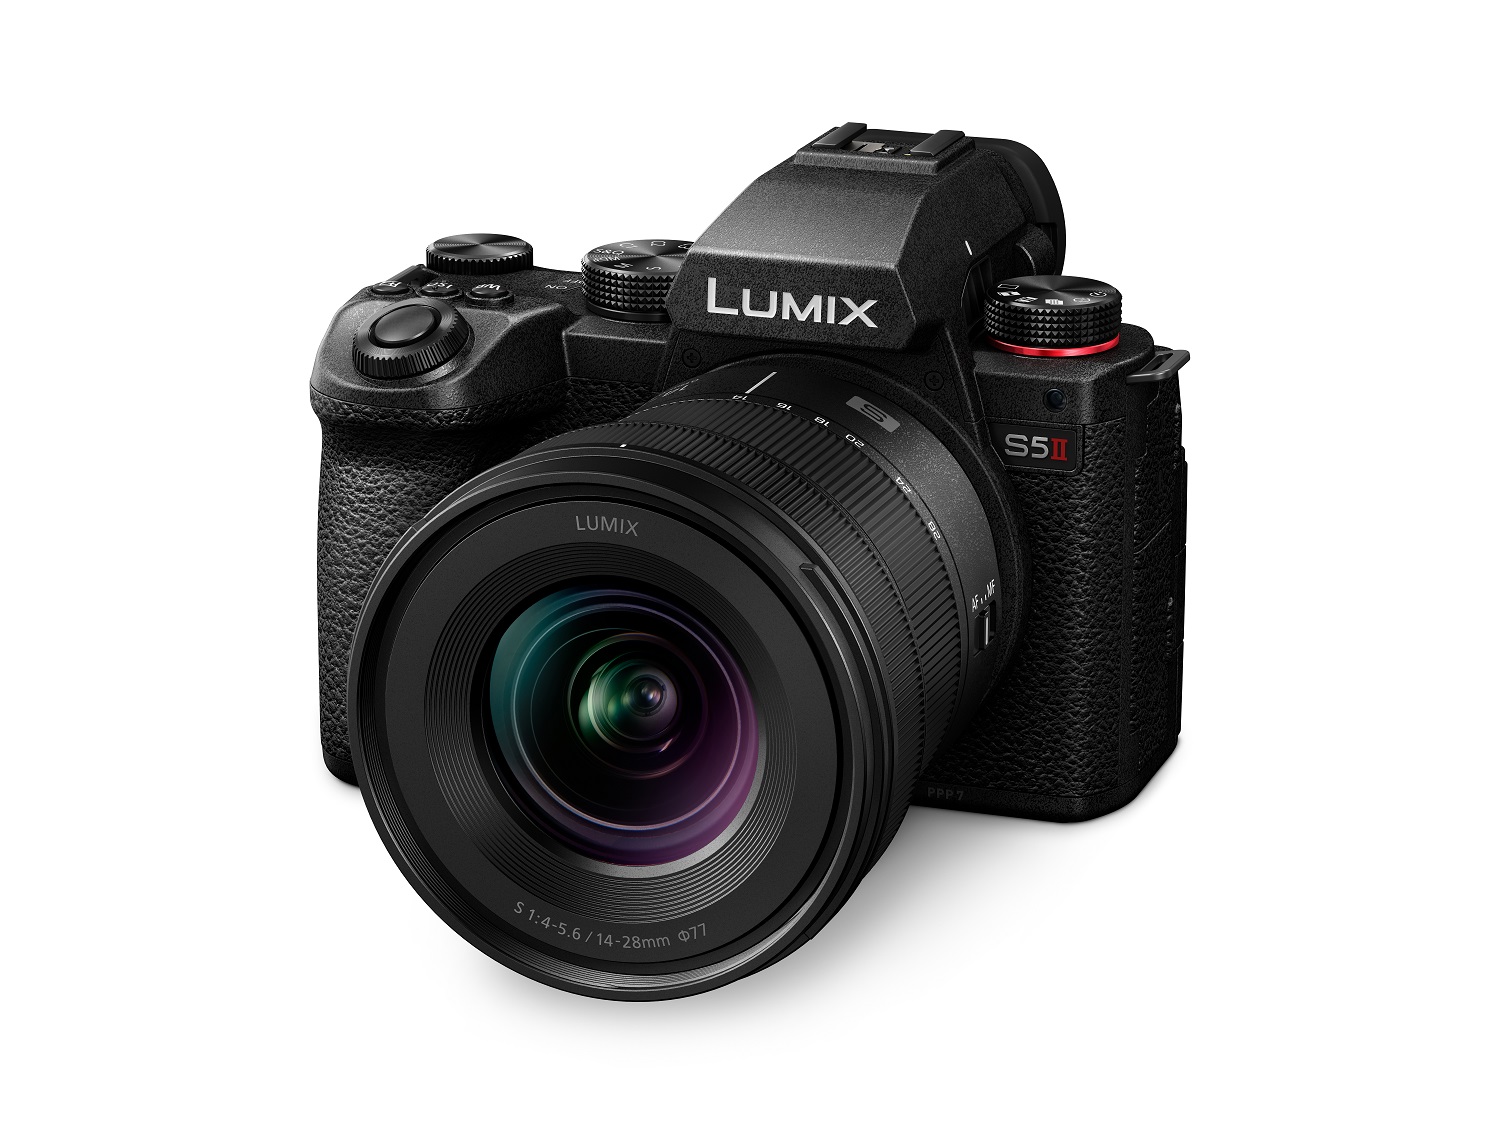 Panasonic представя безогледалните фотоапарати LUMIX S5IIX и LUMIX S5II с подобрен активен стабилизатор на образа, хибридна система за автофокус с фазово разпознаване и новоразработен 24-мегапикселов пълноформатен CMOS сензор